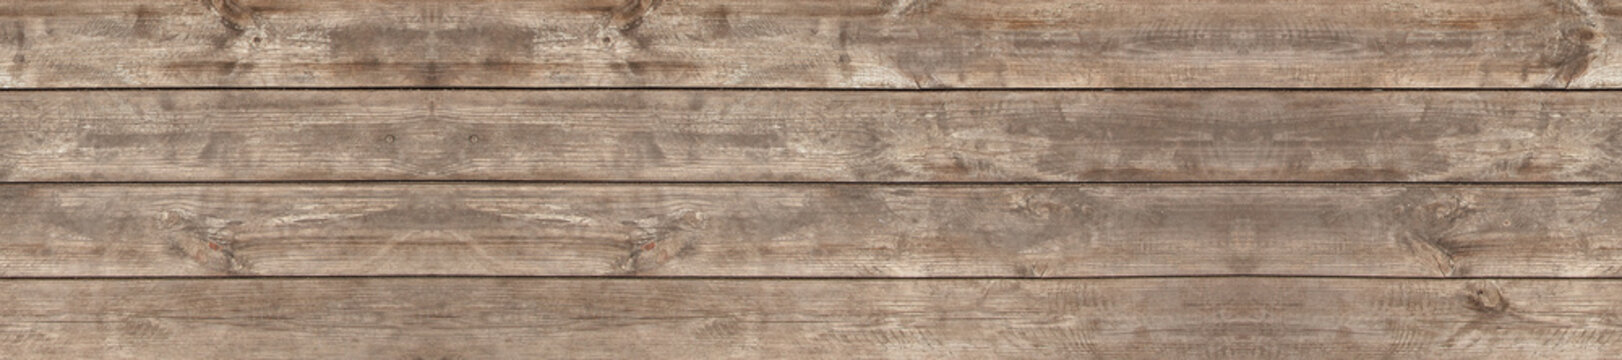 Fototapeta panorama drewno patern teksturowane